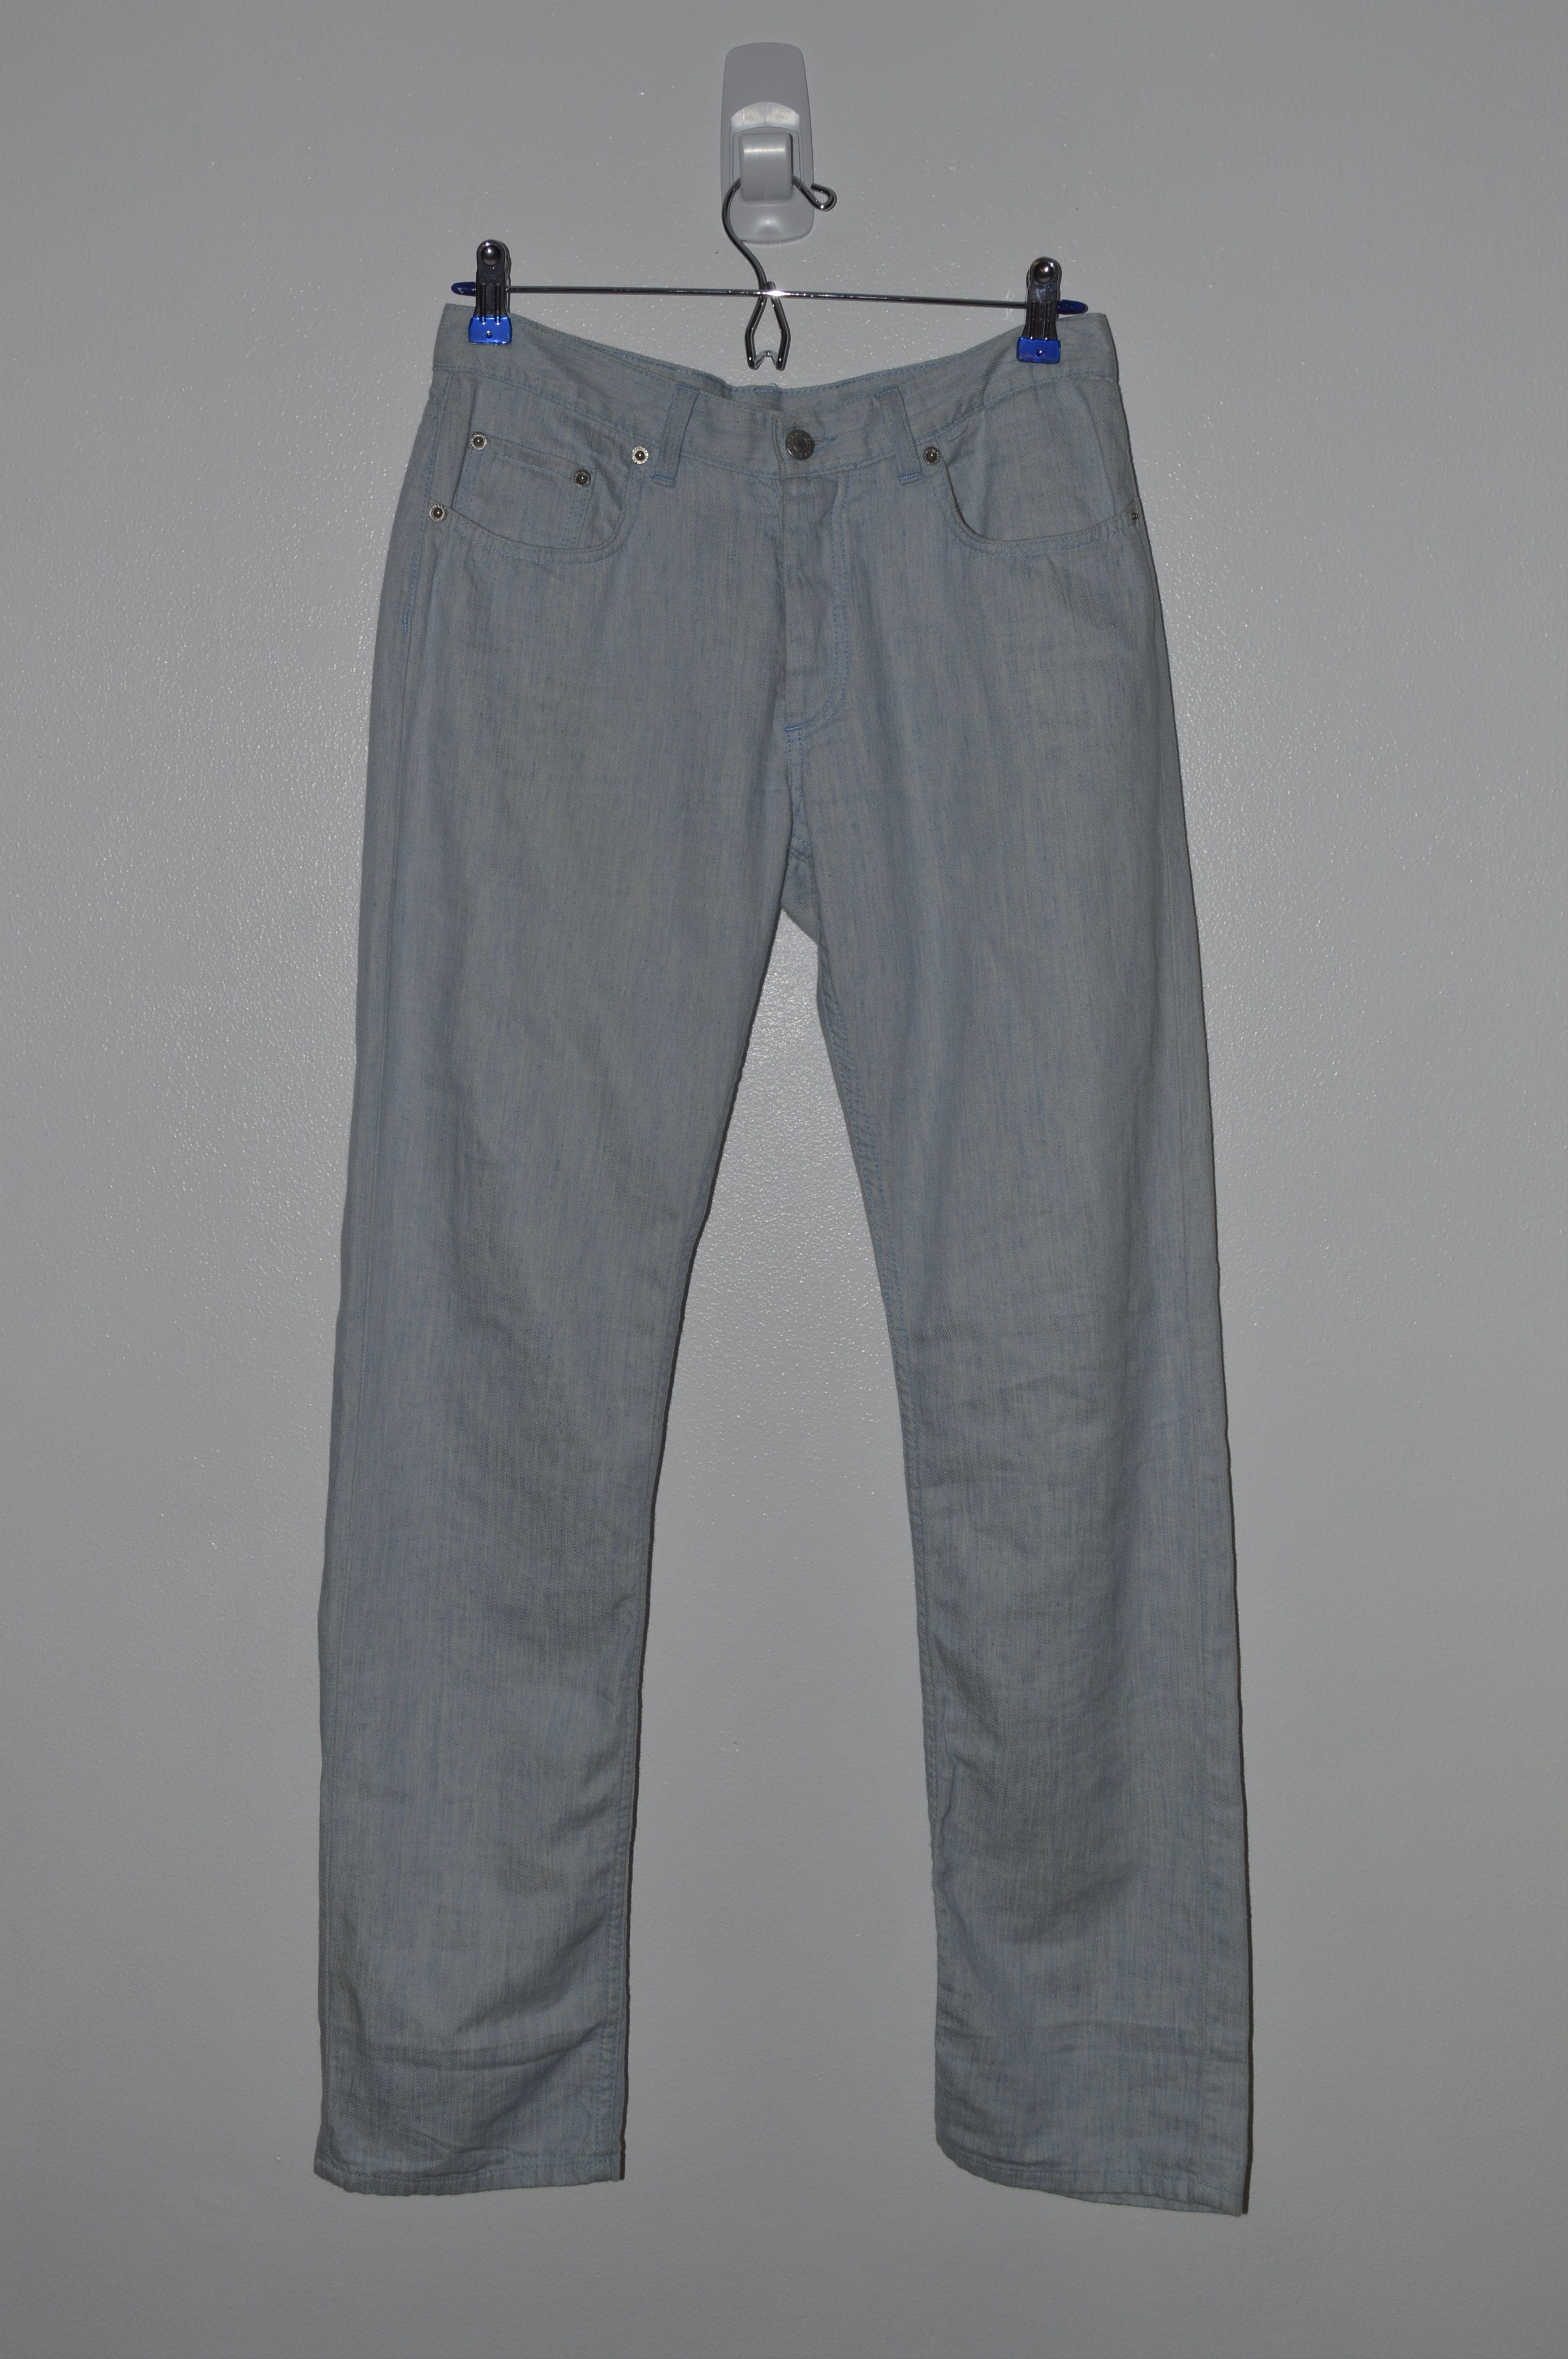 Helmut Lang SS/98 OG Lang Linen/Cotton Light Slim Jeans Mainline Size US 29 - 1 Preview